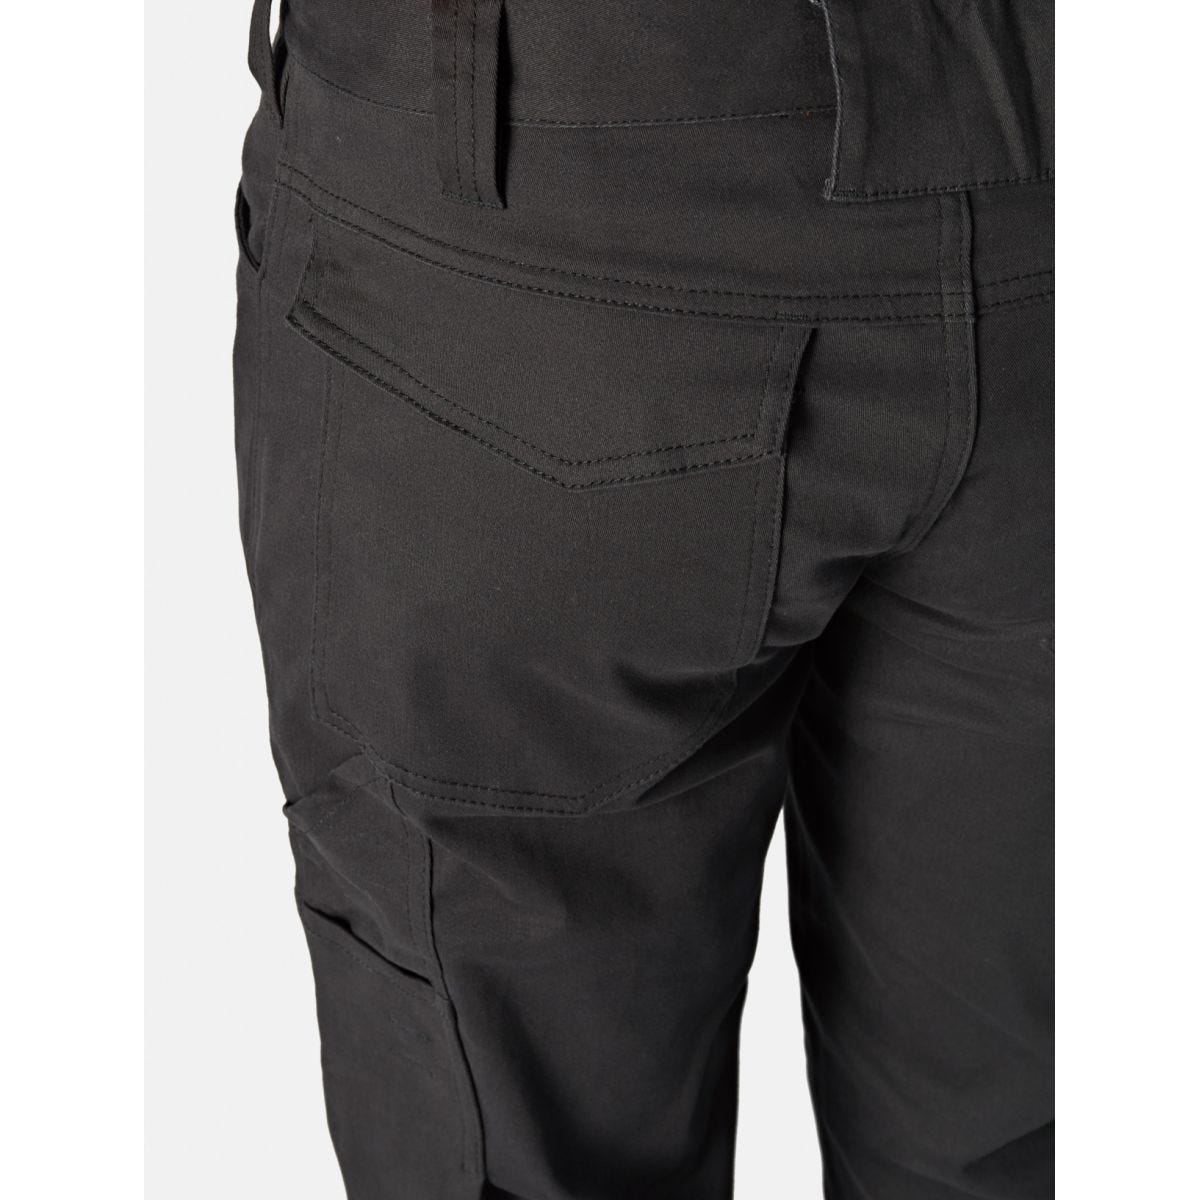 Pantalon Lead In Flex Noir - Dickies - Taille 40 2